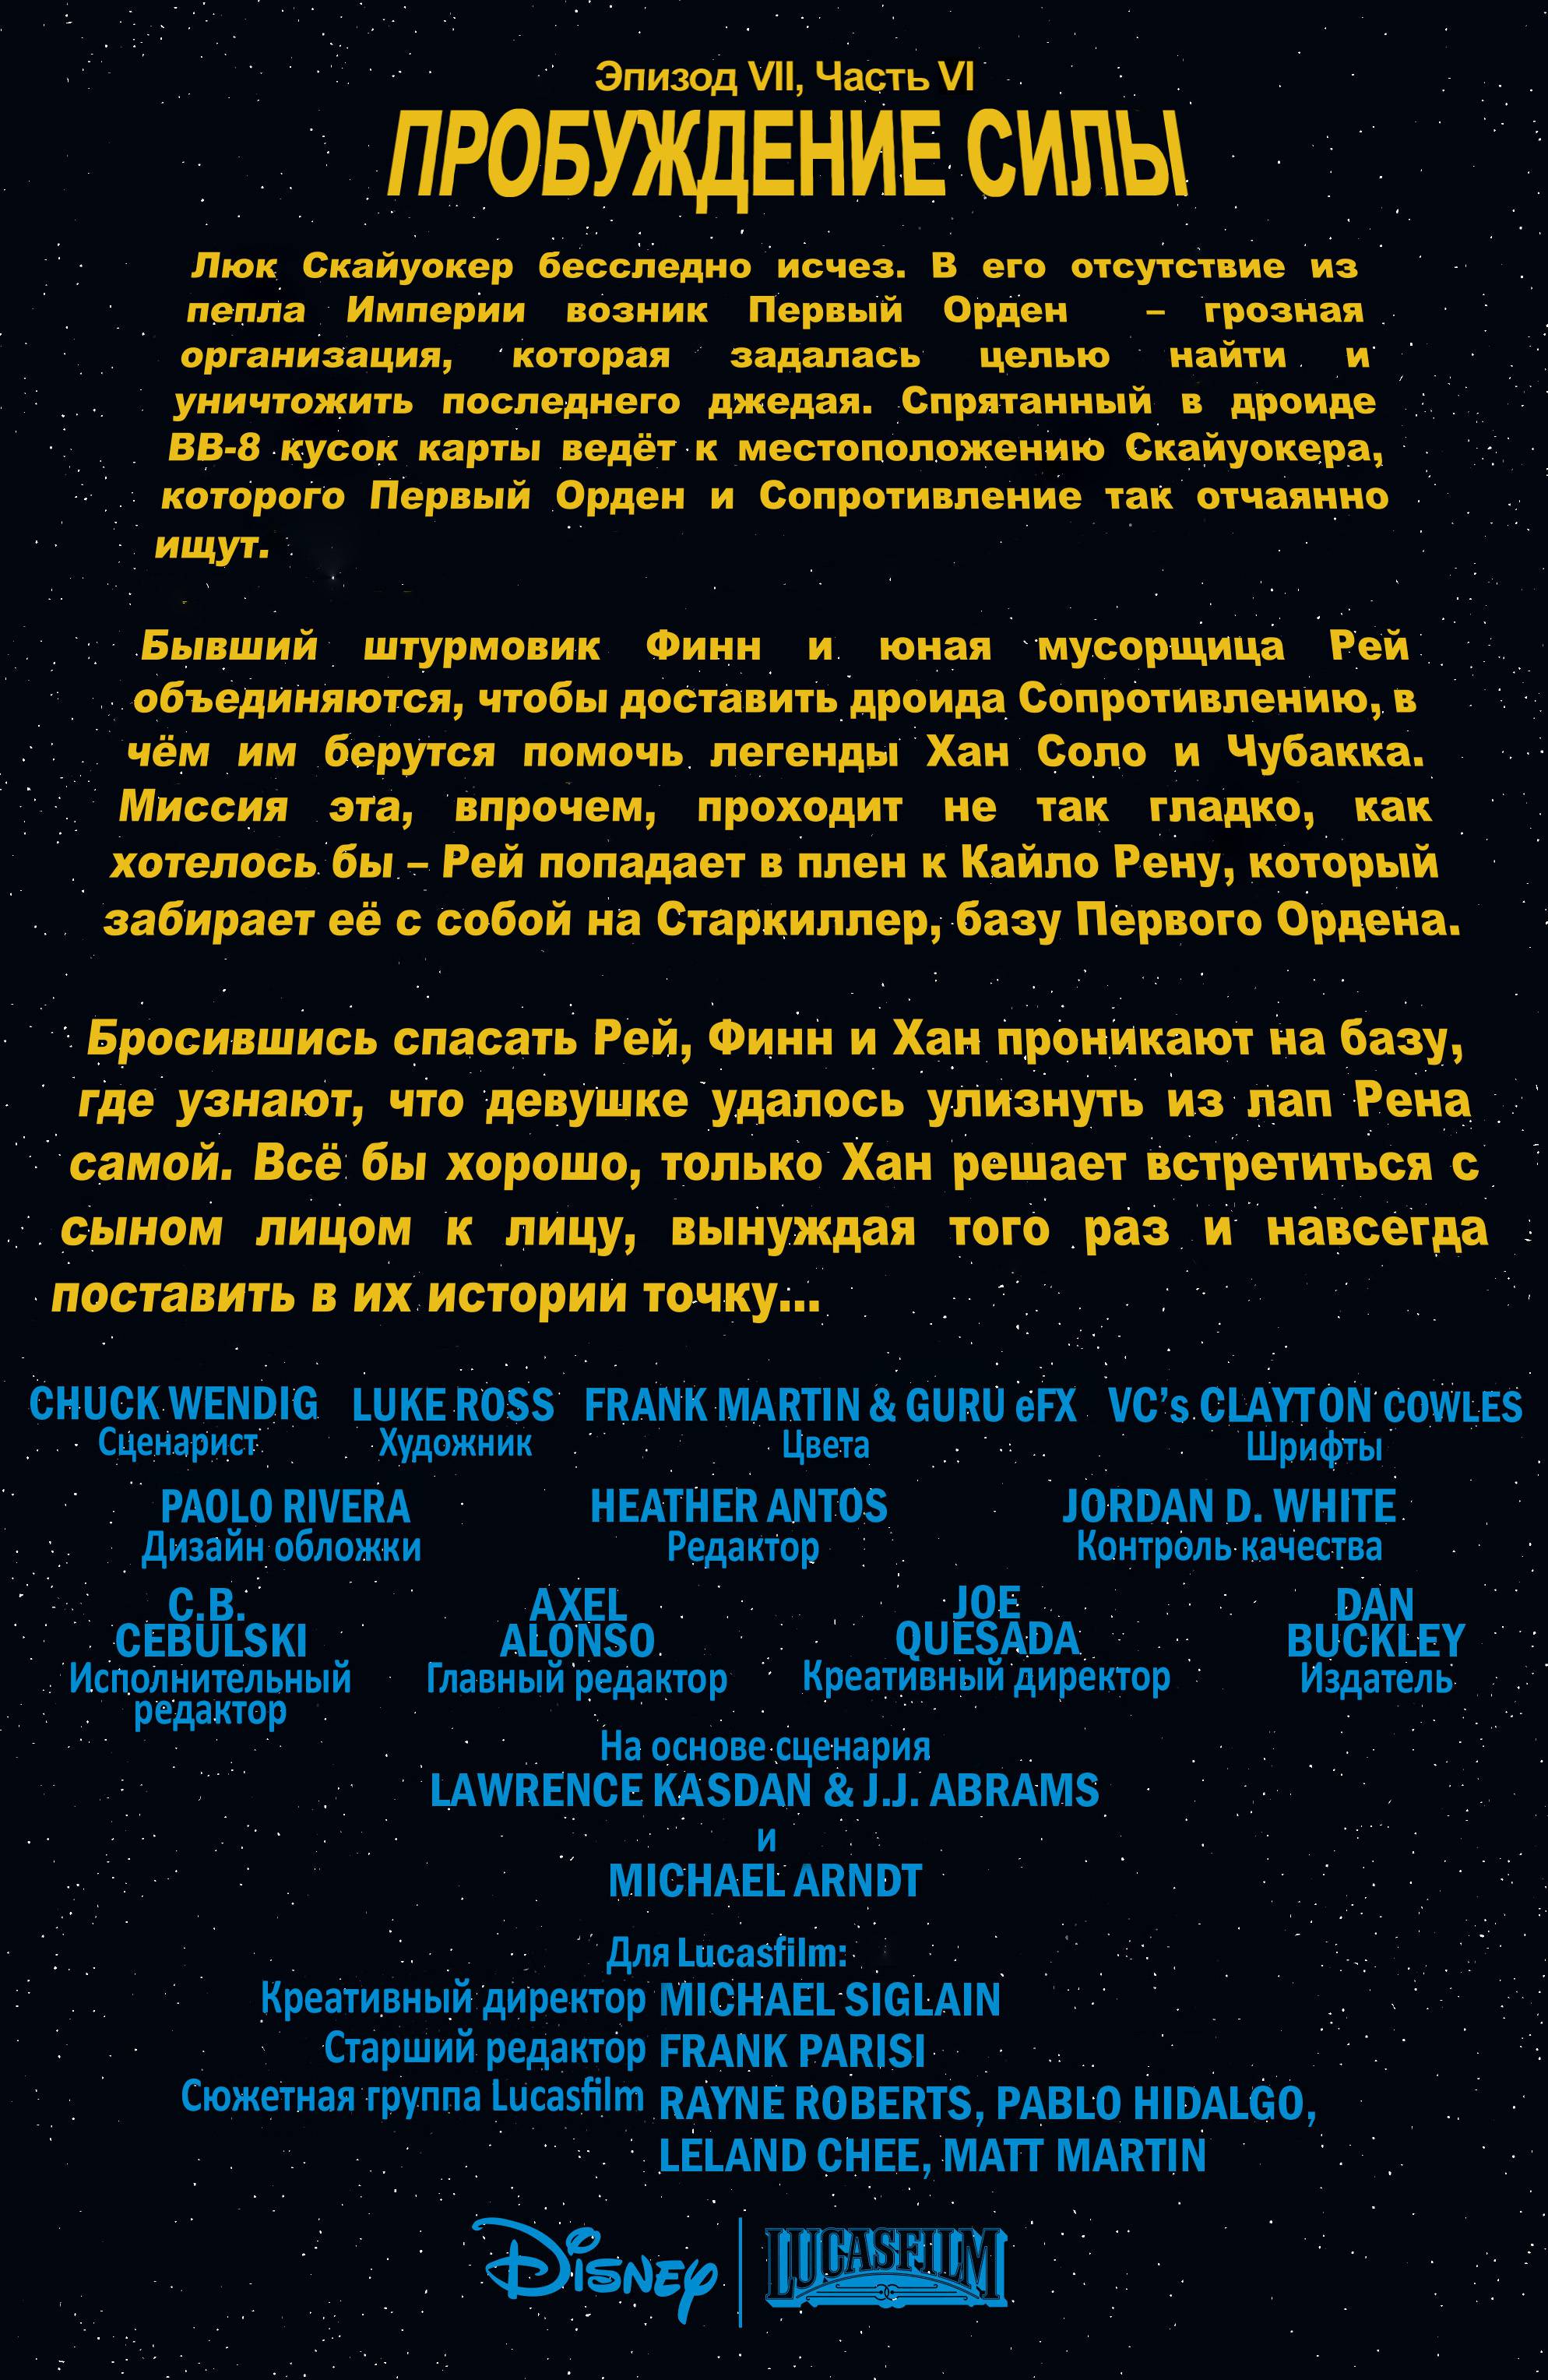 Звездные Войны: Пробуждение Силы. Адаптация Фильма №6 онлайн